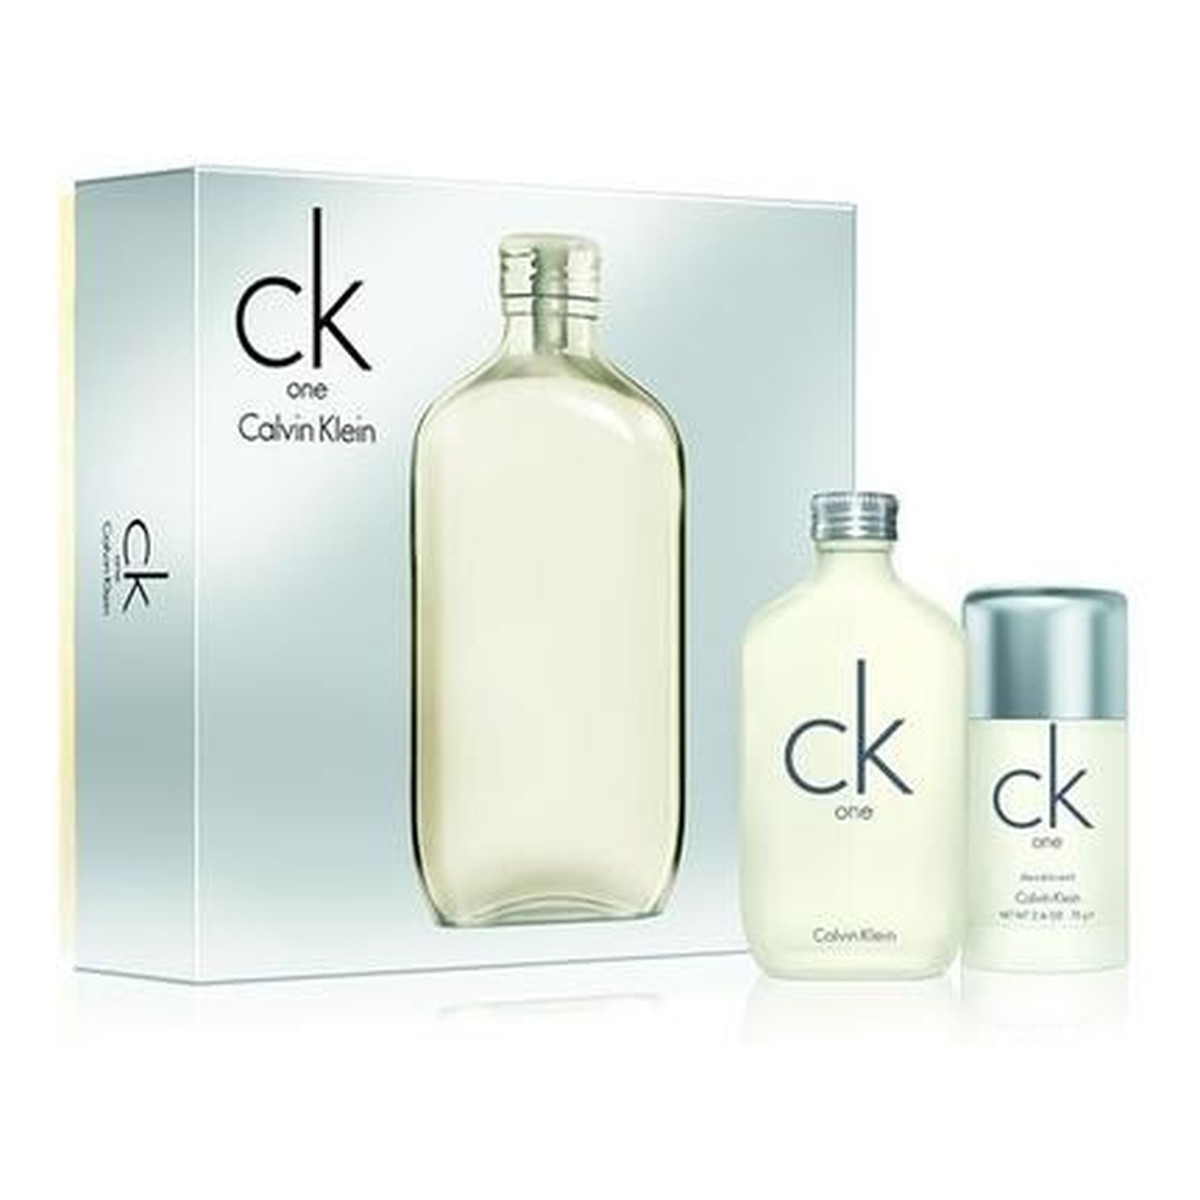 Calvin Klein CK One zestaw (woda toaletowa 100ml + dezodorant sztyft 75ml) 75ml